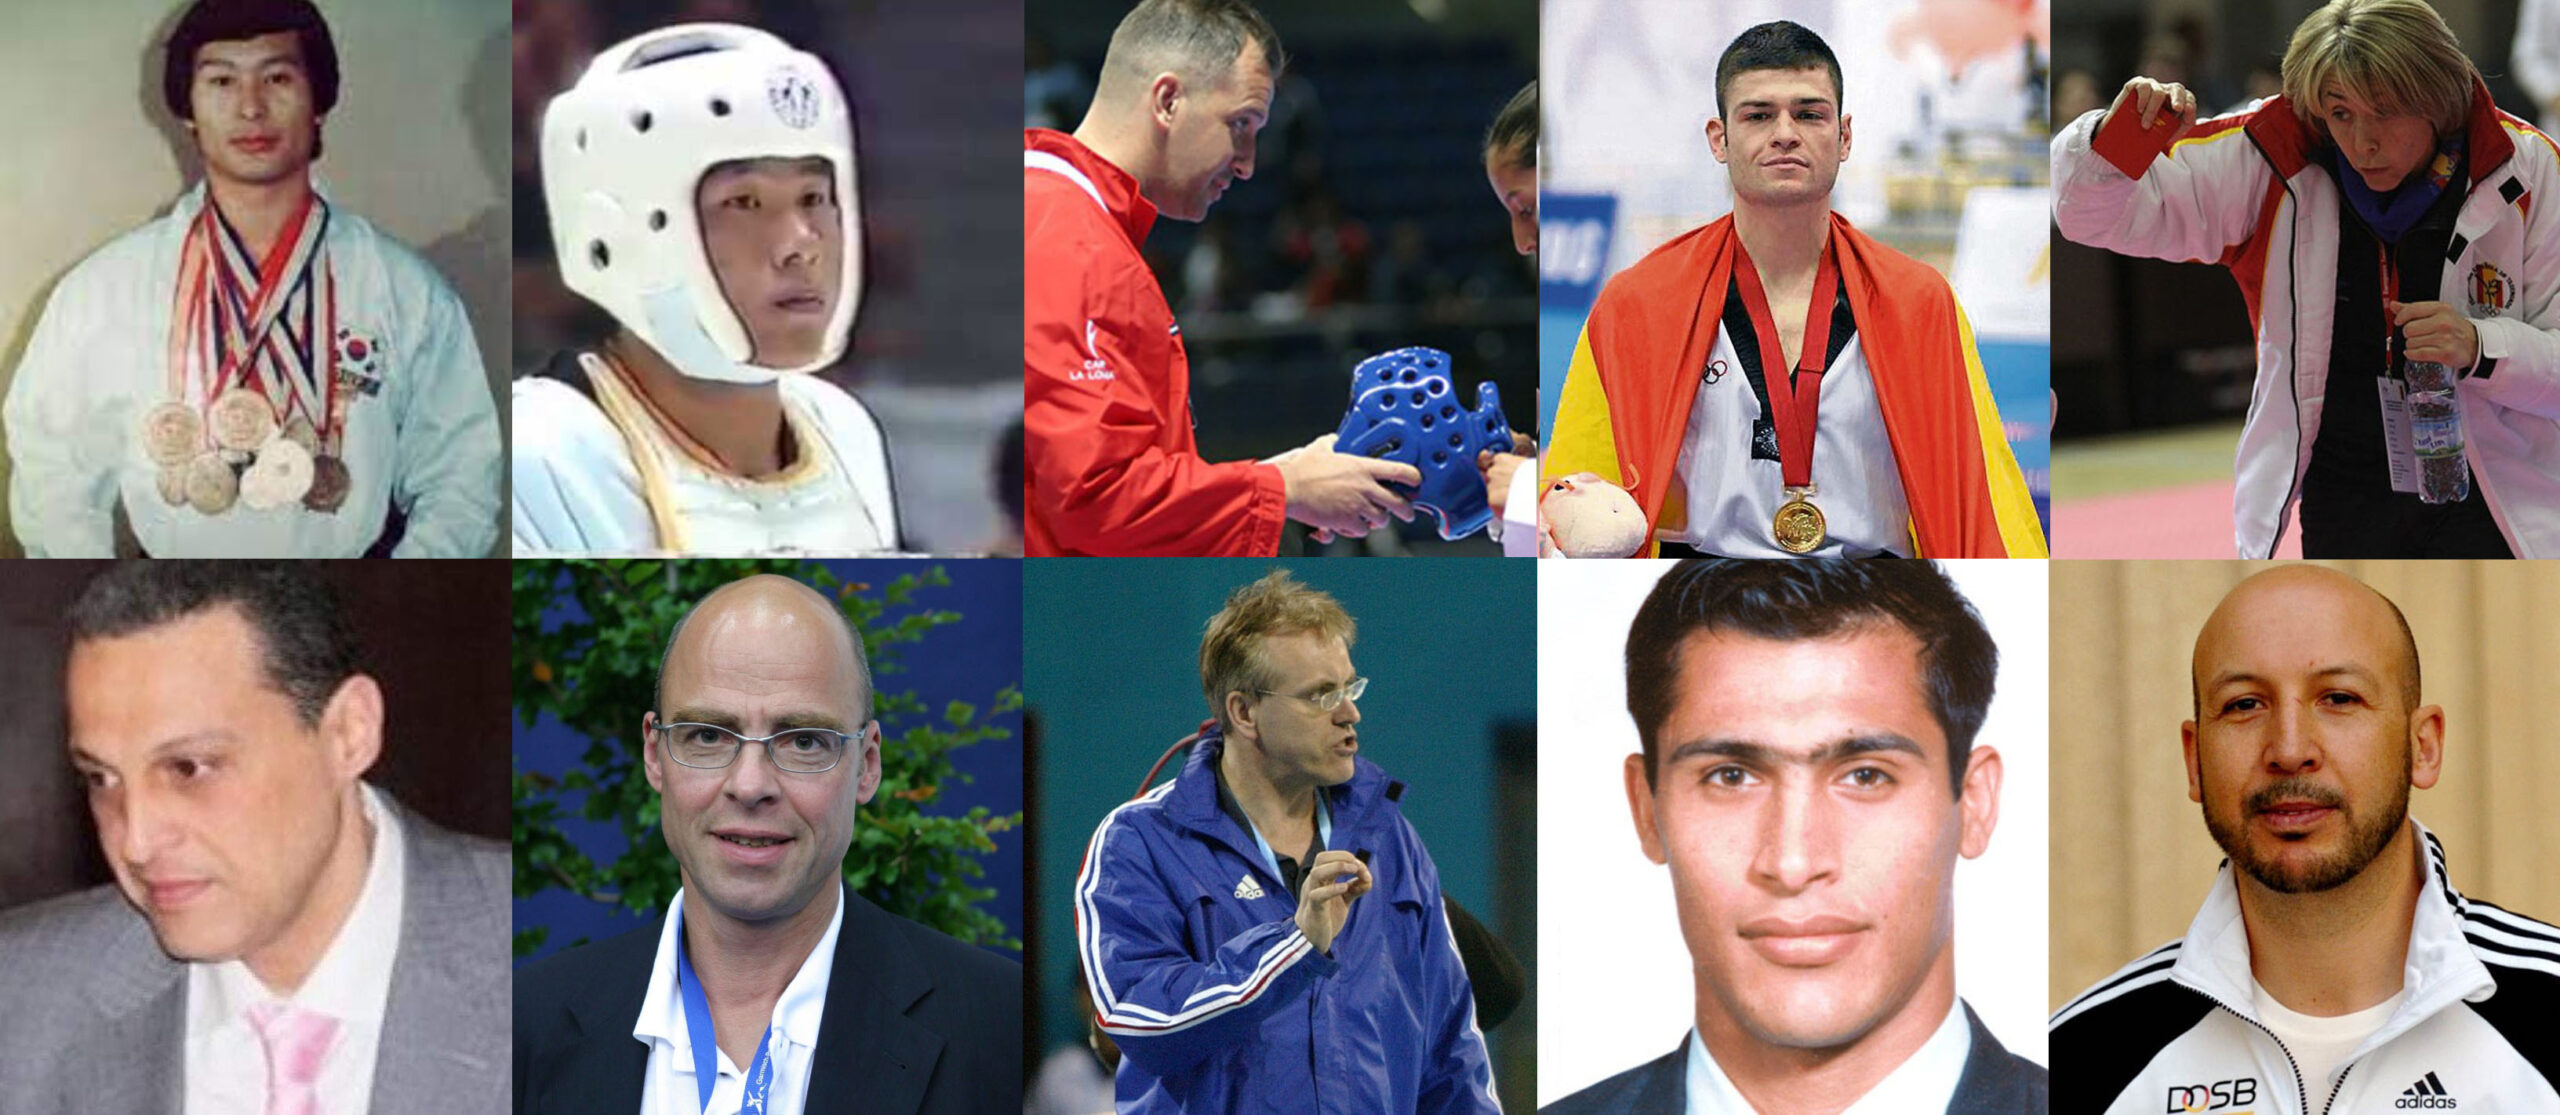 “La élite de la élite”: Campeones mundiales de Taekwondo como atleta y coach